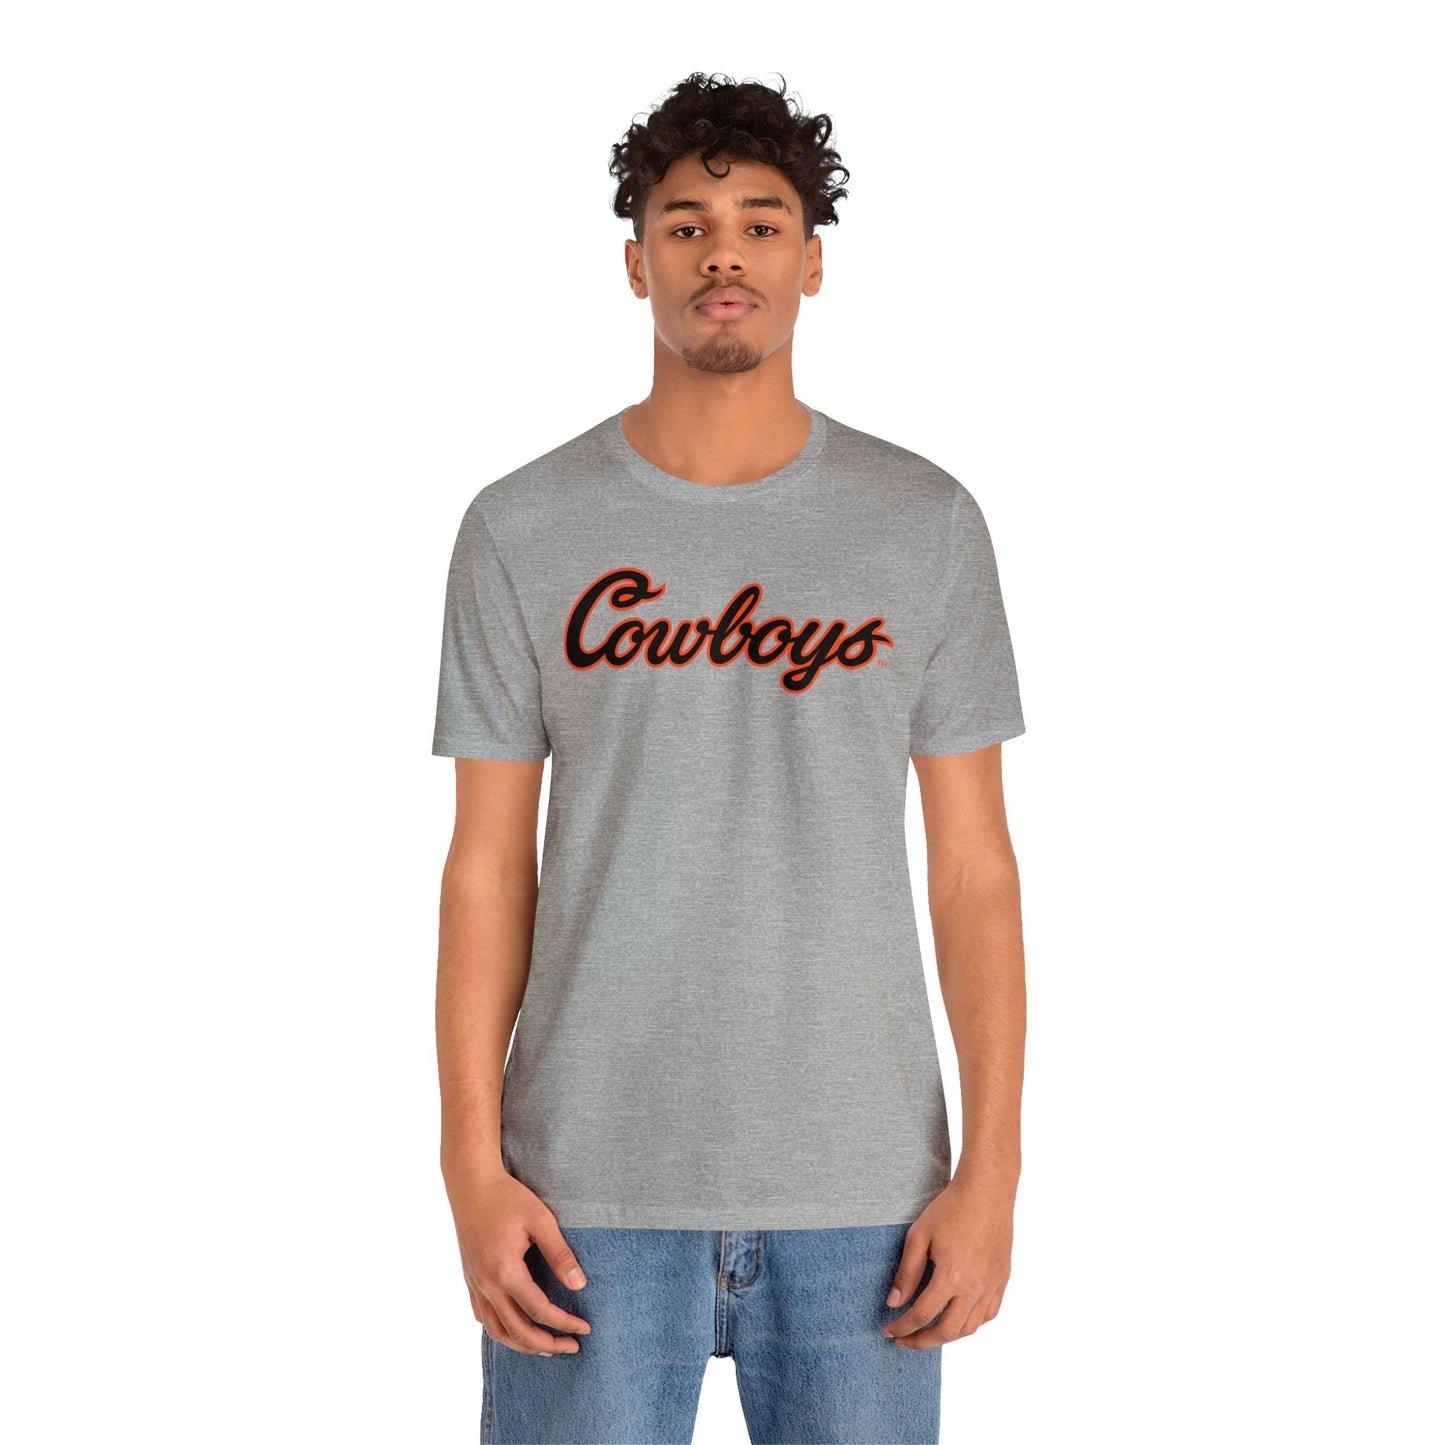 Connor Dow #13 Cursive Cowboys T-Shirt